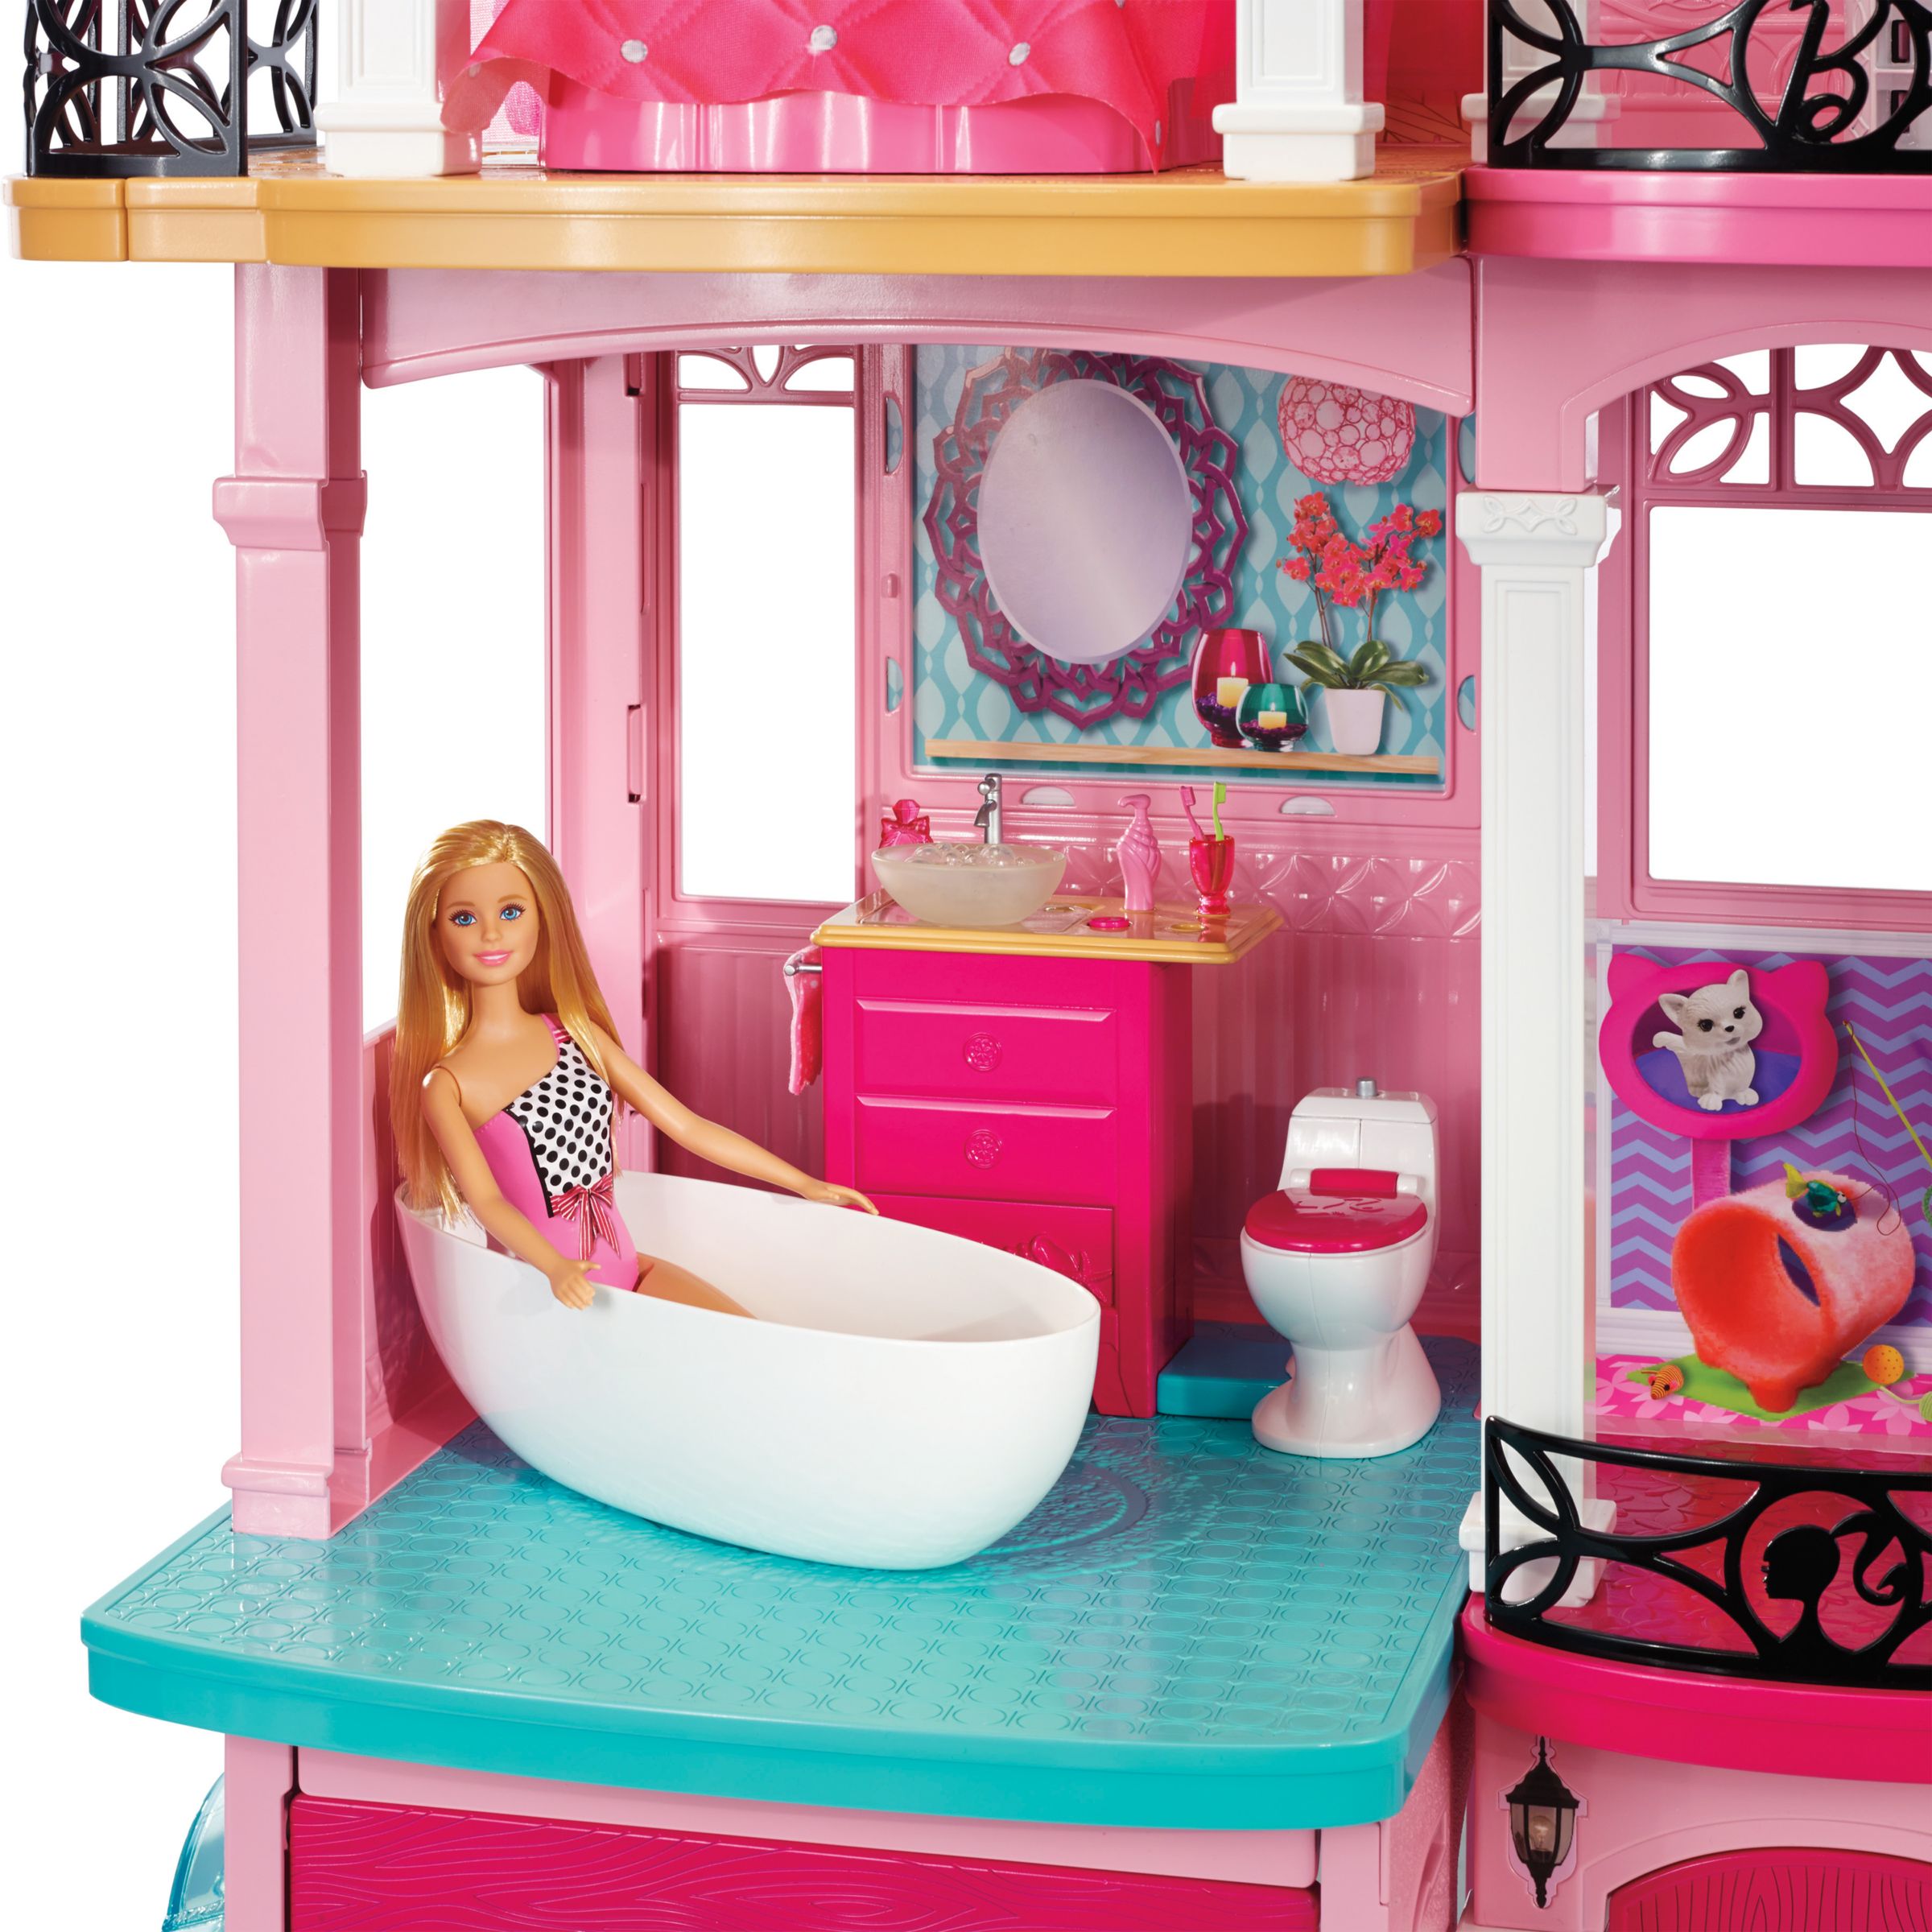 Лучший дом барби. Дом Barbie Dreamhouse. Дом мечты Барби ffy84. Кукольный дом Barbie Dreamhouse Барби дом мечты. Barbie дом мечты для куклы ffy84.